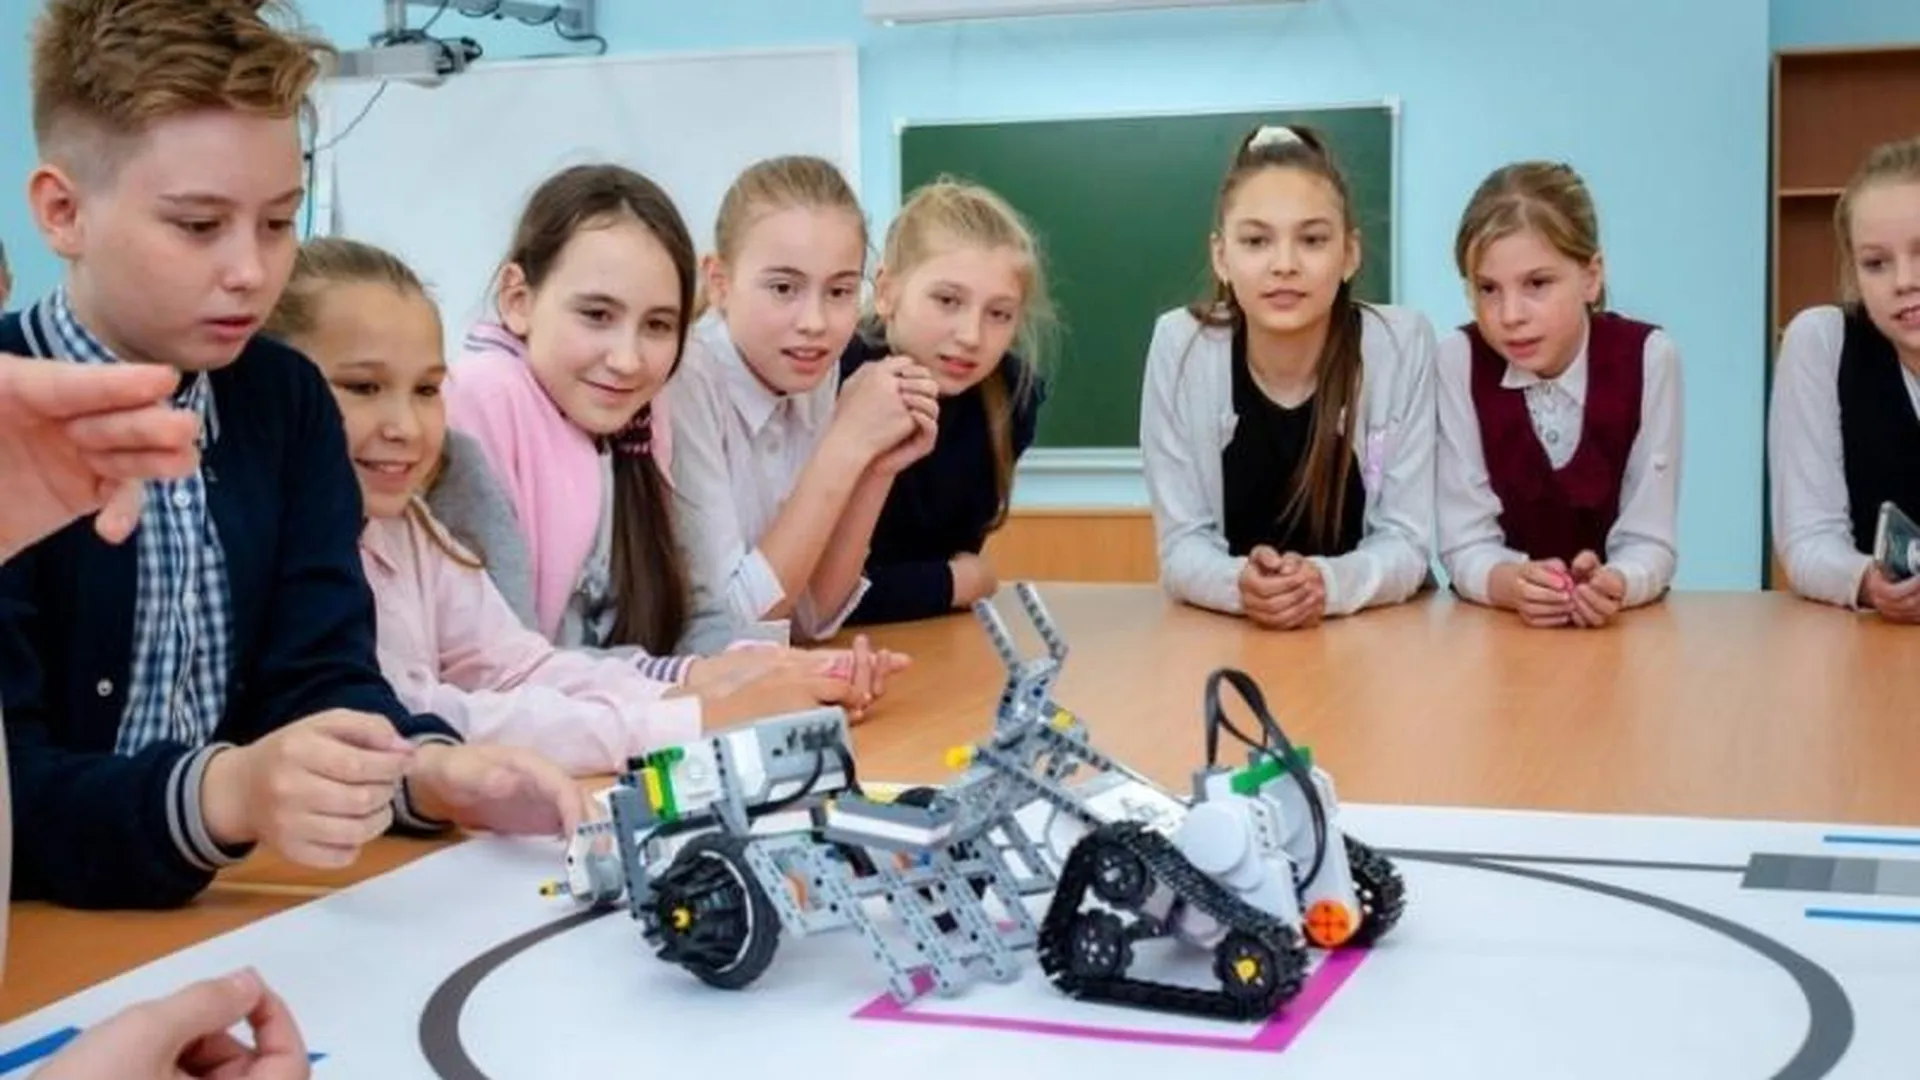 В кружке робототехники занимаются ученики разных классов. Робототехника в школе. Робототехника для детей. Урок робототехники в школе. Робототехника в школе занятие.